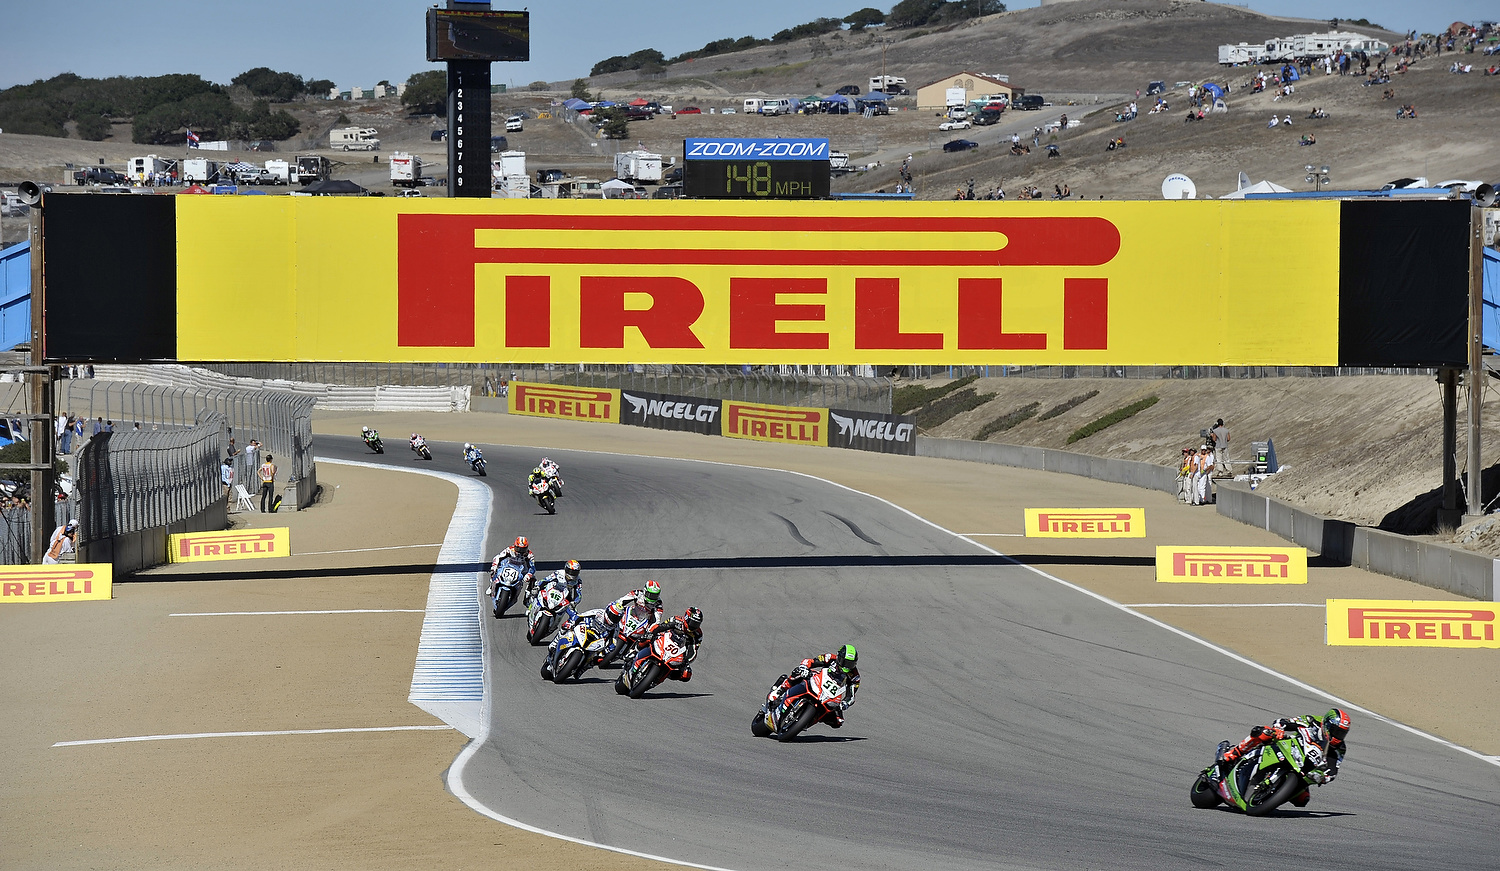 Com os pneus de série Diablo Superbike, disponíveis para venda no mercado, a Pirelli quebra recorde da pista de Laguna Seca